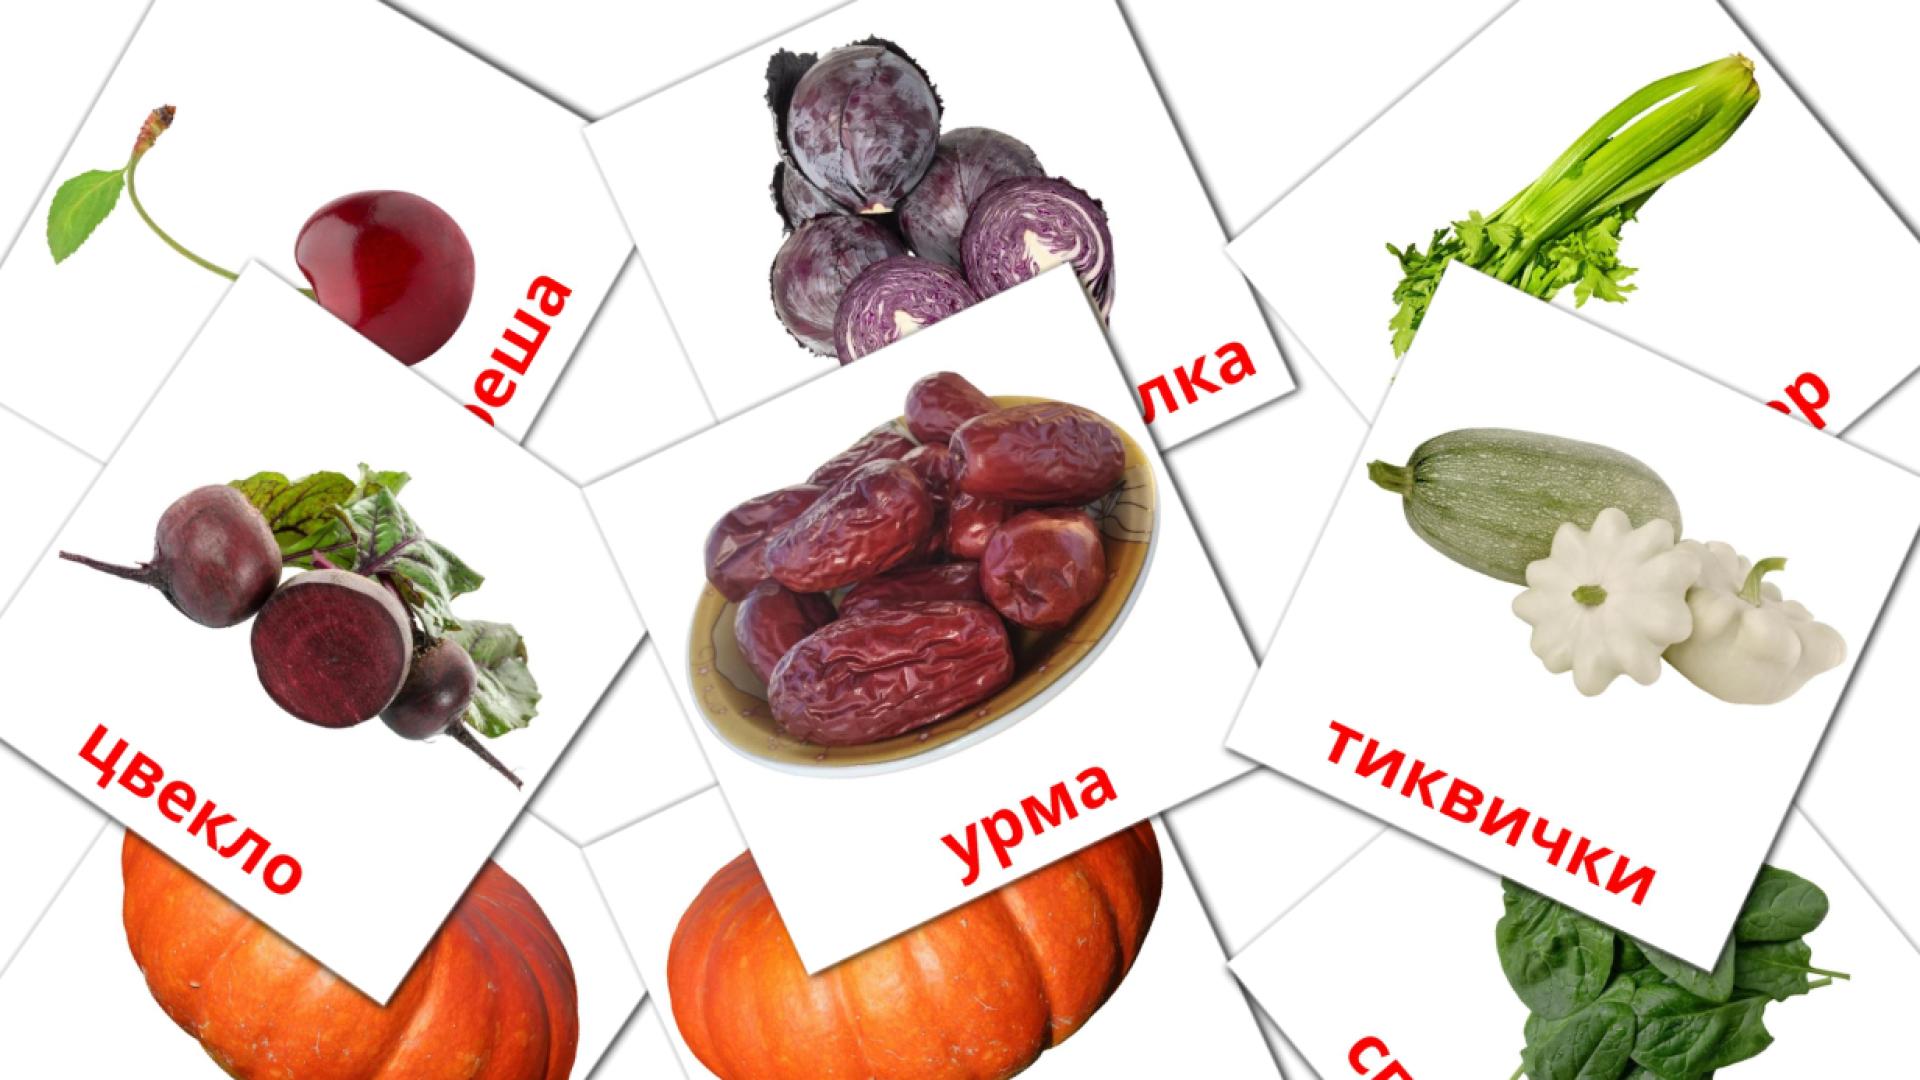 Карточки Домана Храна на македонском языке